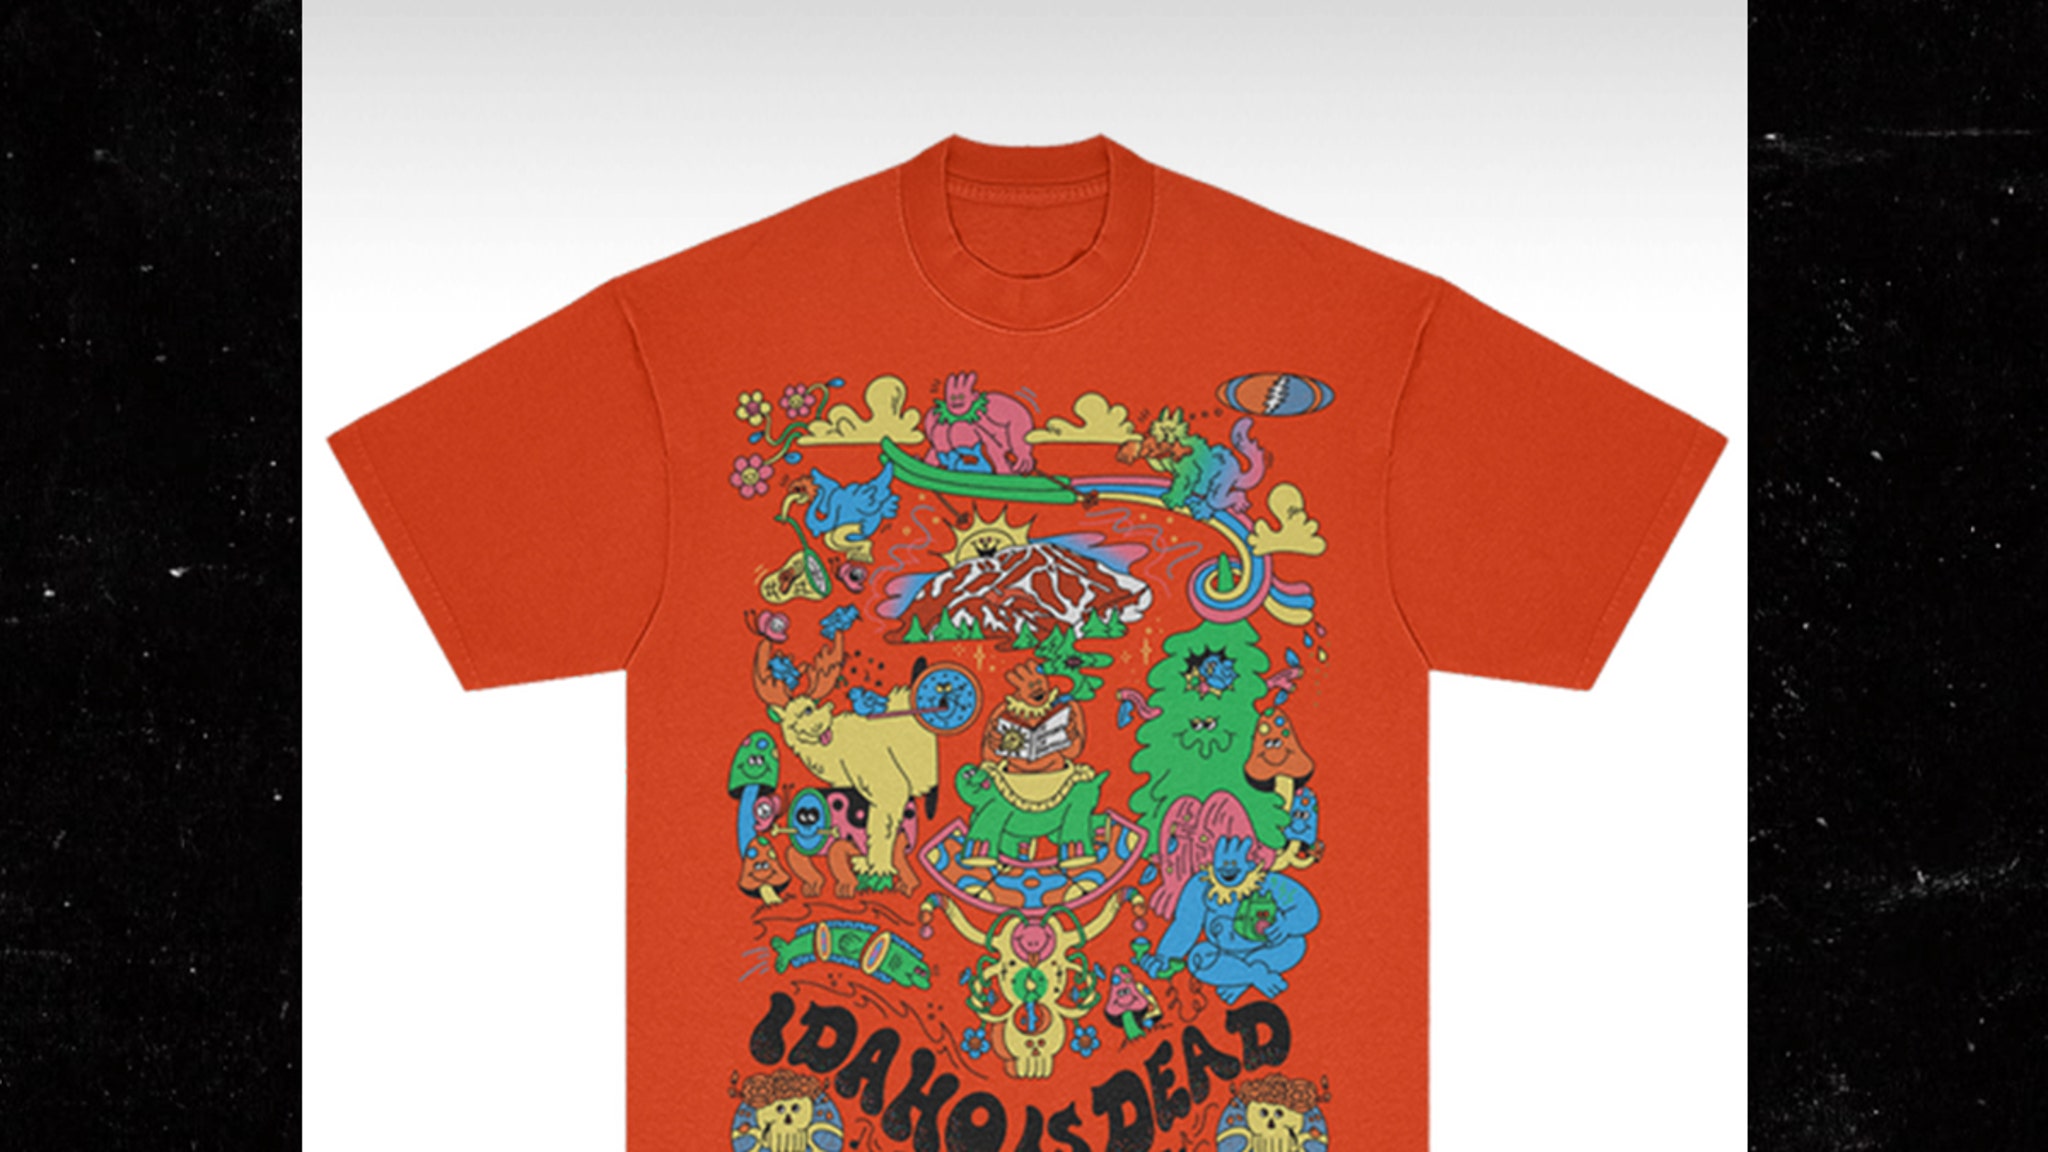 Grateful Dead продает футболки с надписью «Айдахо мертв» в связи с убийствами в колледже Айдахо